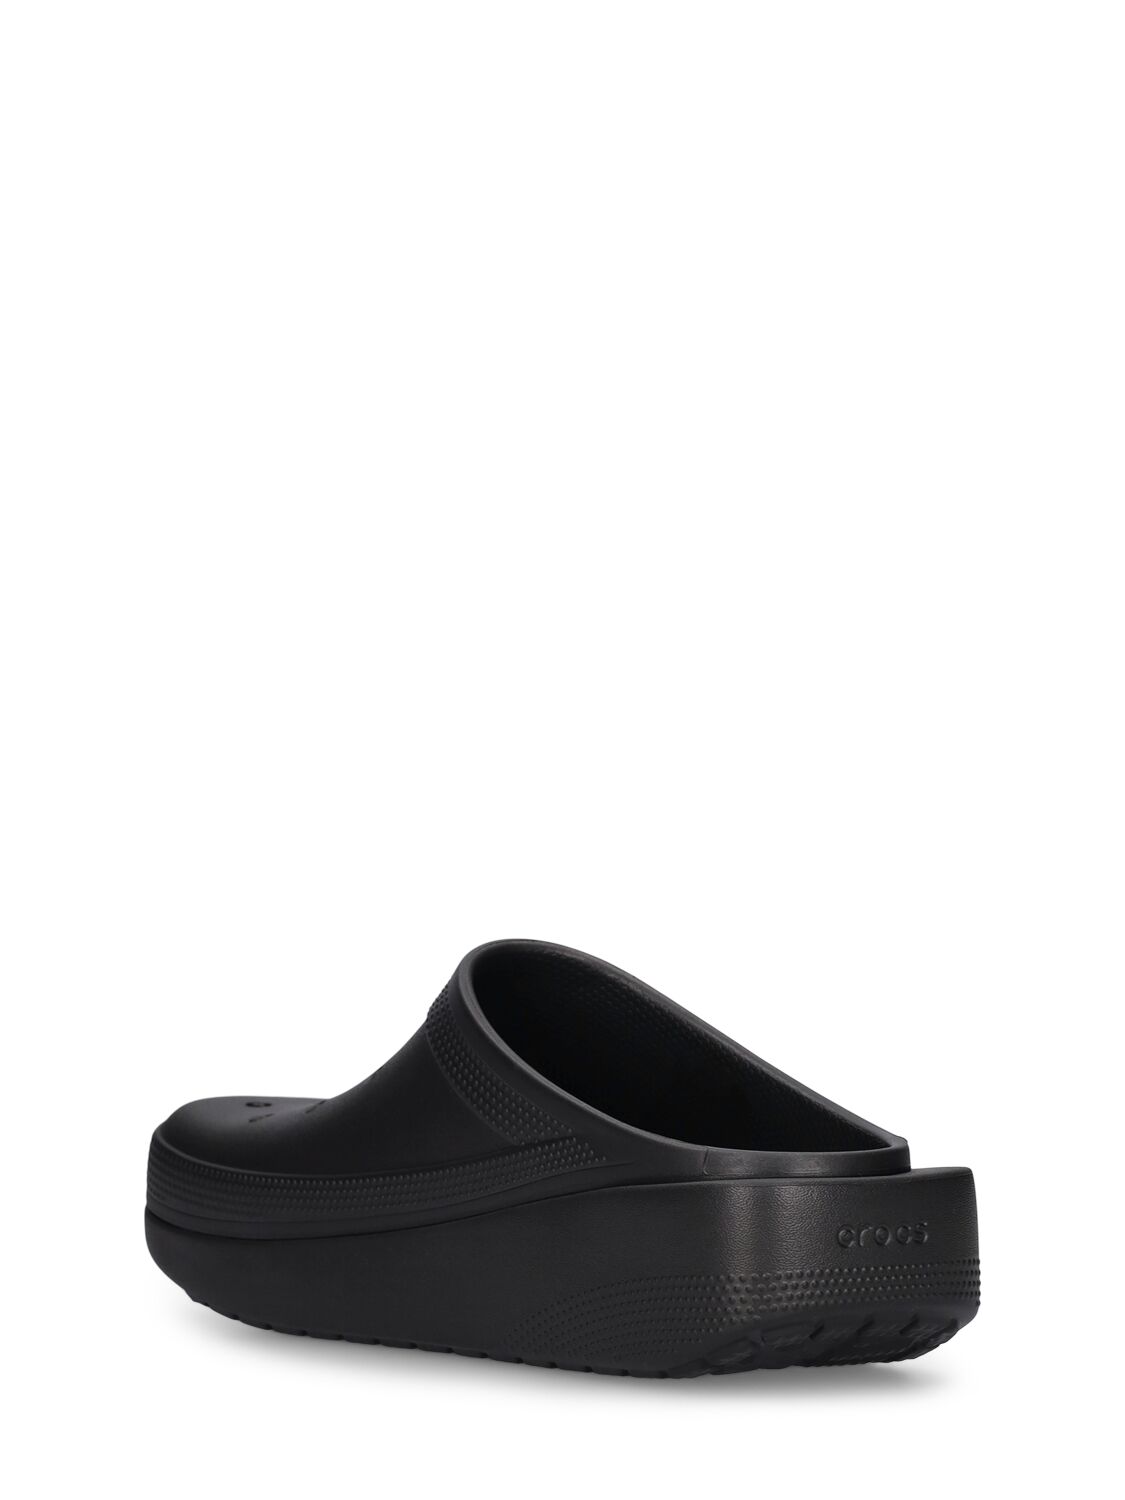 Shop Crocs Blunt Toe Slides In Black